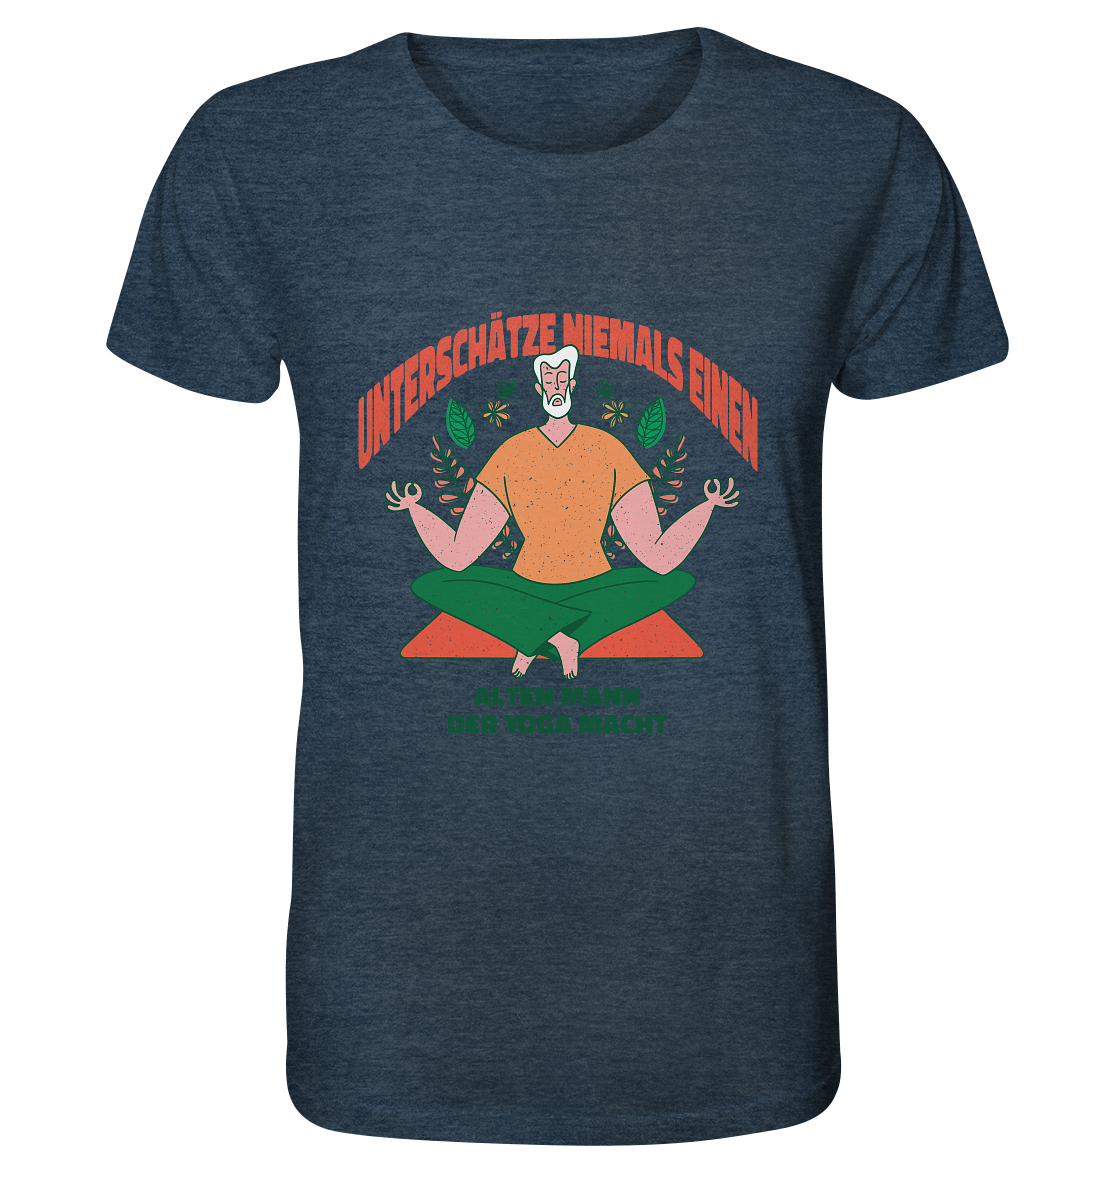 Unterschätze niemals einen alten Mann Yoga - Organic Shirt (meliert) - Online Kaufhaus München